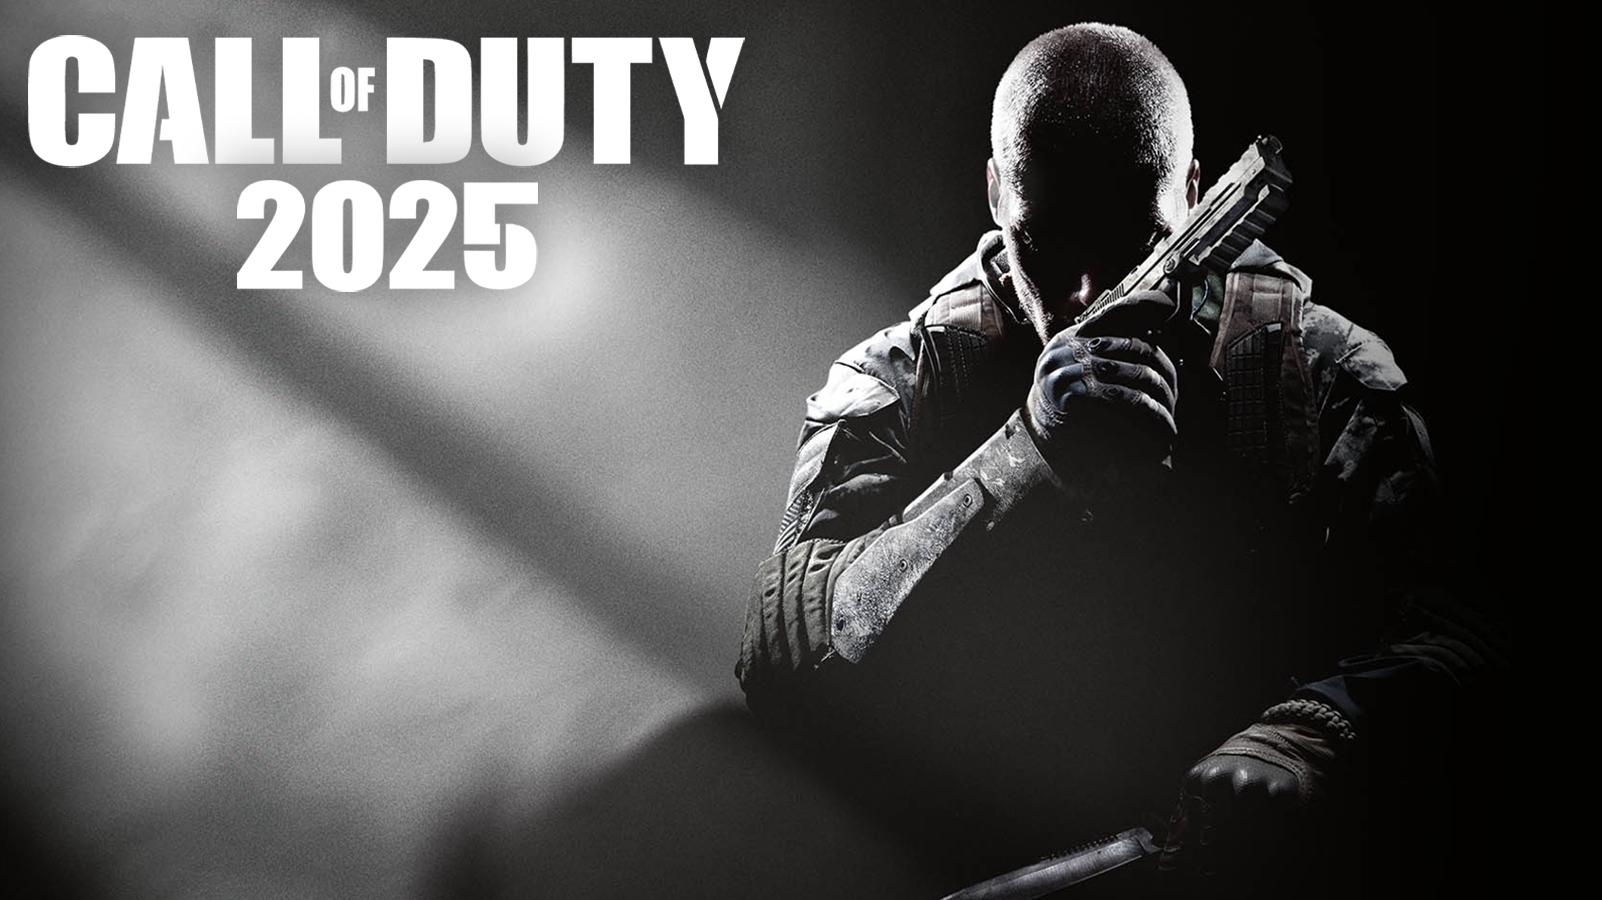 Call of Duty 2025 fan art